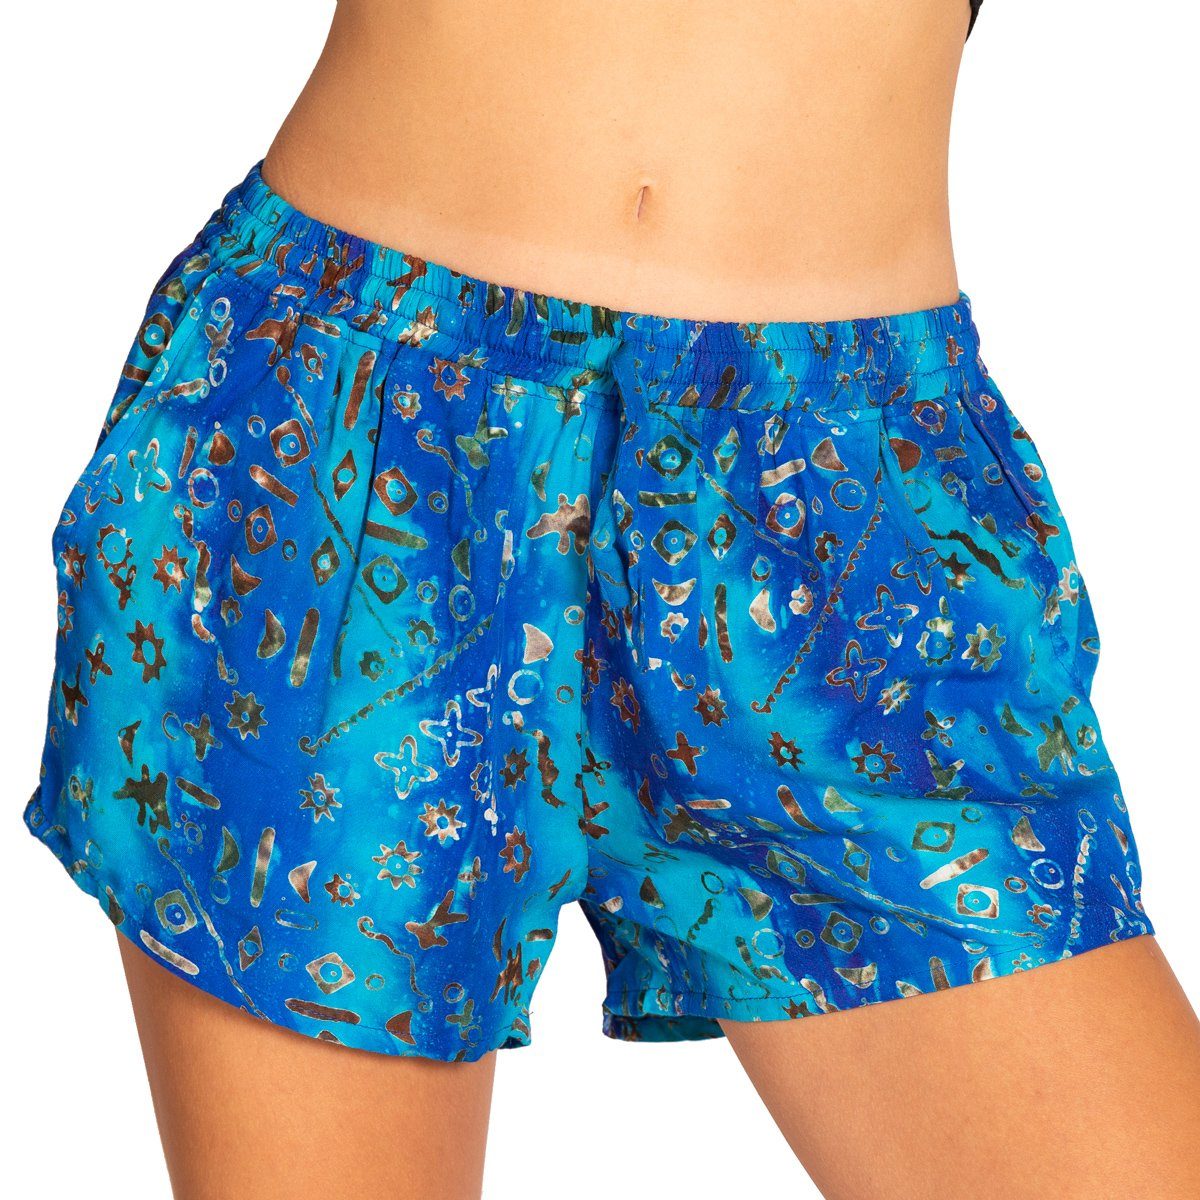 PANASIAM Strandshorts Damen Shorts Wachsbatik für Strand Yoga oder Meditation farbecht und angenehm zu Tragen Relaxshorts Damenshorts kurze Sporthose B115 blue